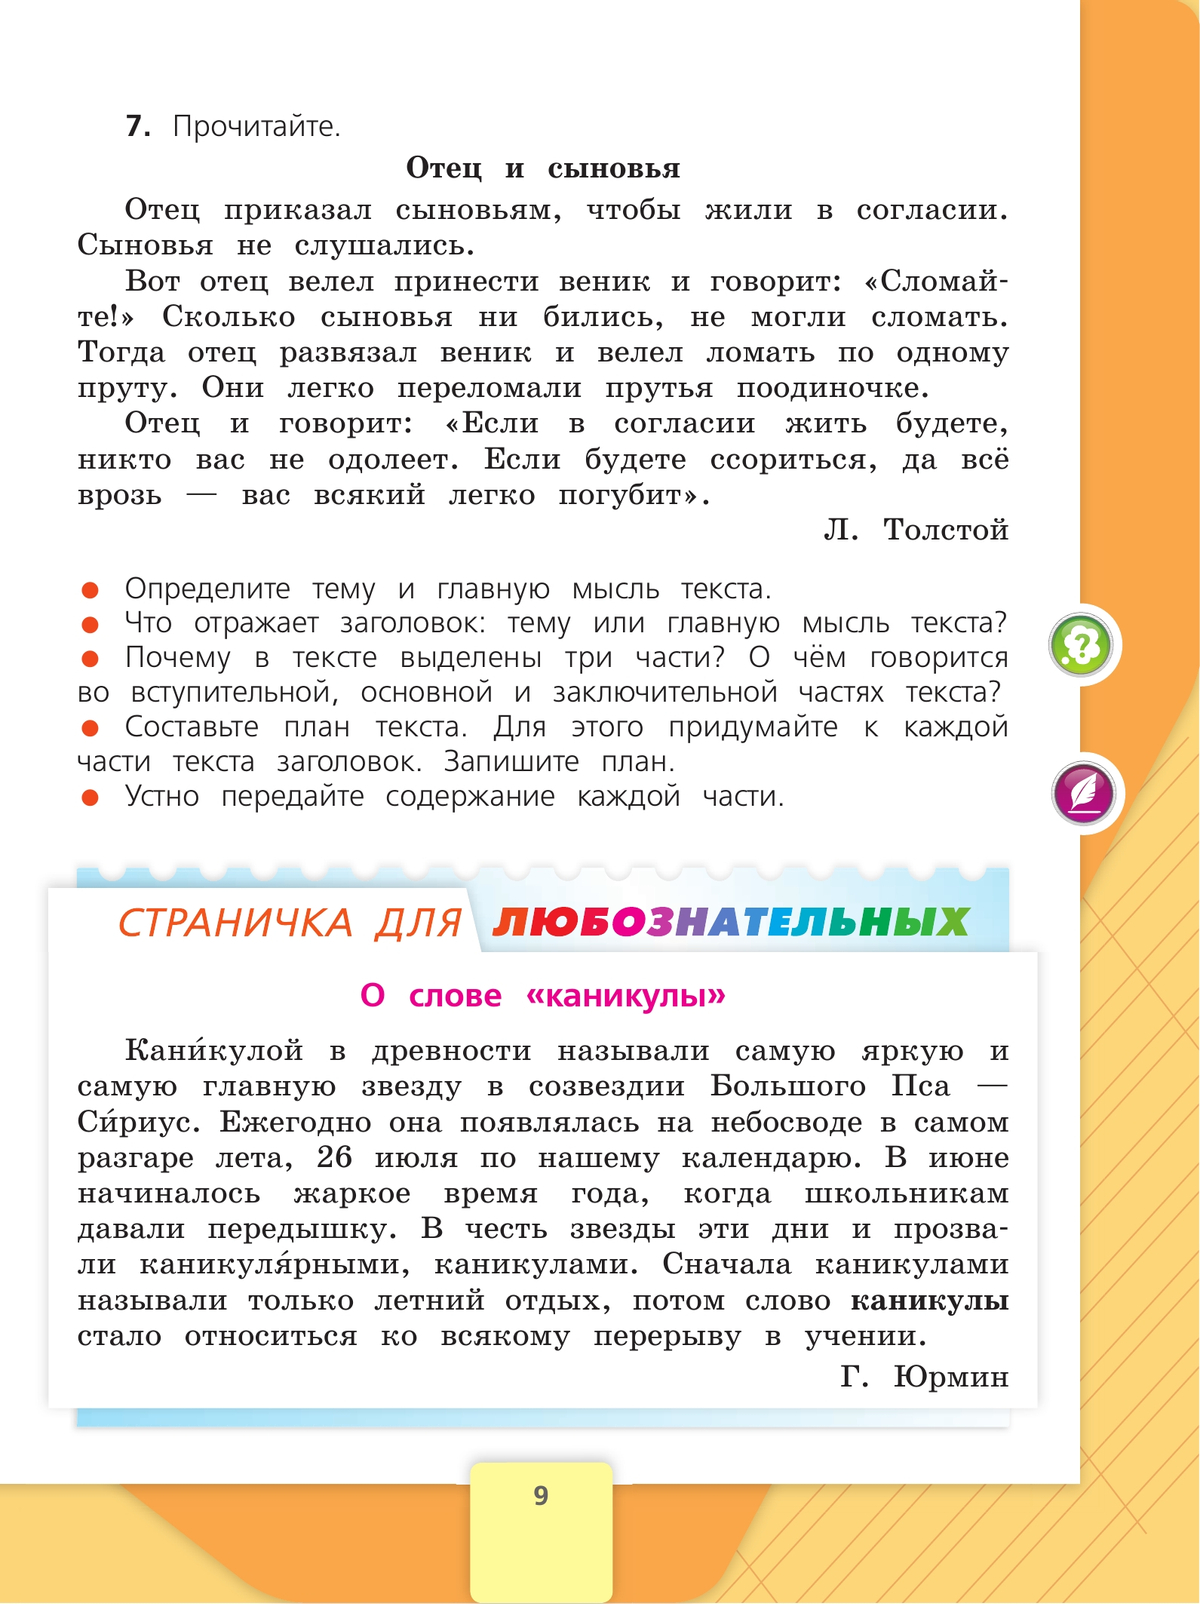 Русский язык. 4 класс. Учебник. В 2 ч. Часть 1 2